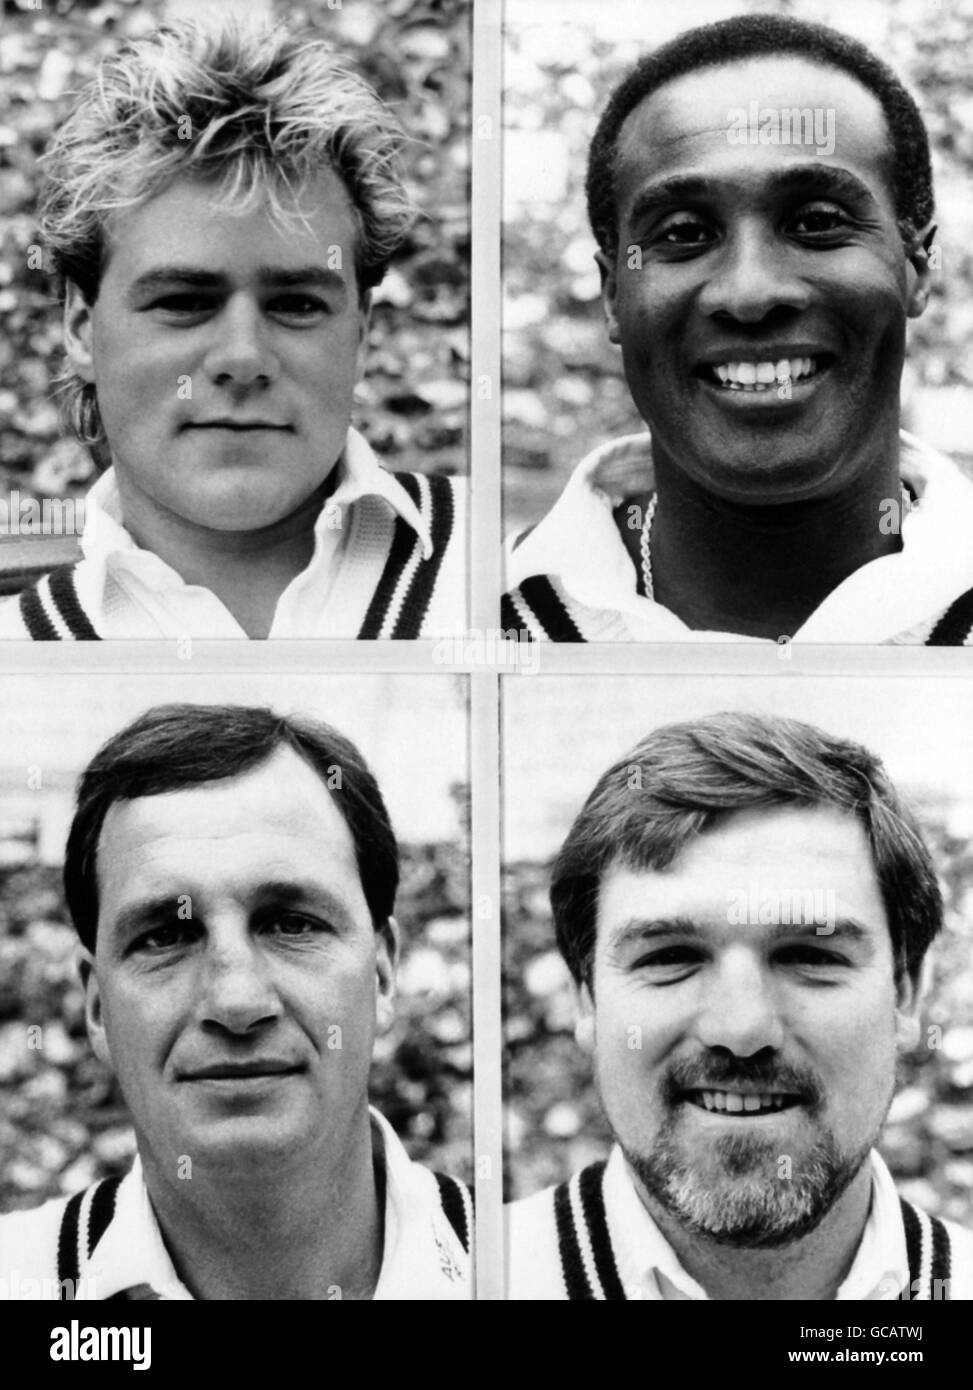 Membres de l'équipe de cricket du comté de Middlesex (En haut à gauche - à droite) Neil MacLaurin et Wayne Daniel (En bas à gauche - à droite) John Embury et Mike Gatting Banque D'Images